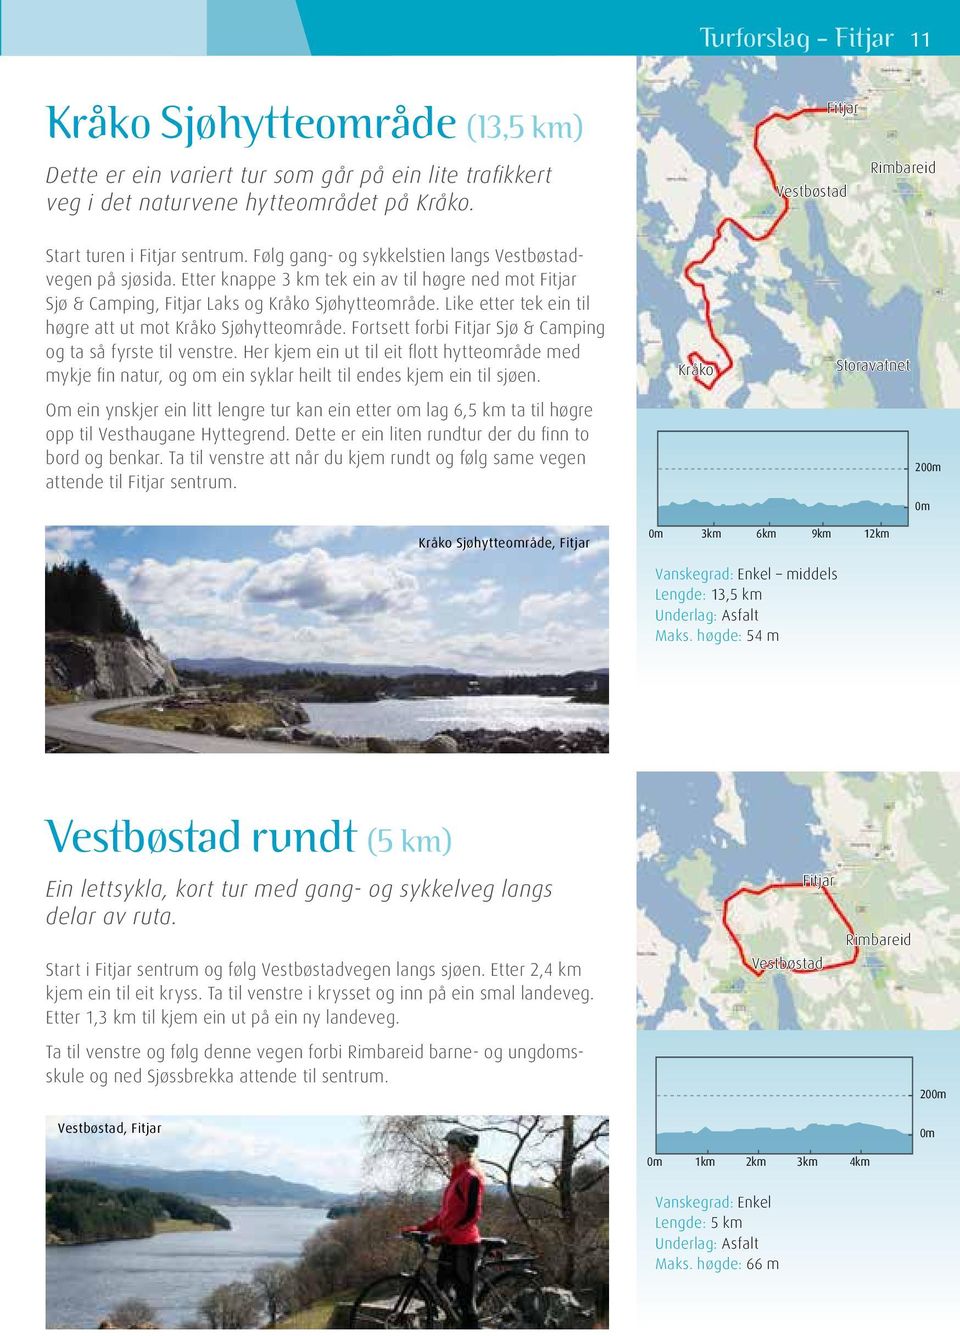 Etter knappe 3 km tek ein av til høgre ned mot Fitjar Sjø & Camping, Fitjar Laks og Kråko Sjøhytteområde. Like etter tek ein til høgre att ut mot Kråko Sjøhytteområde.